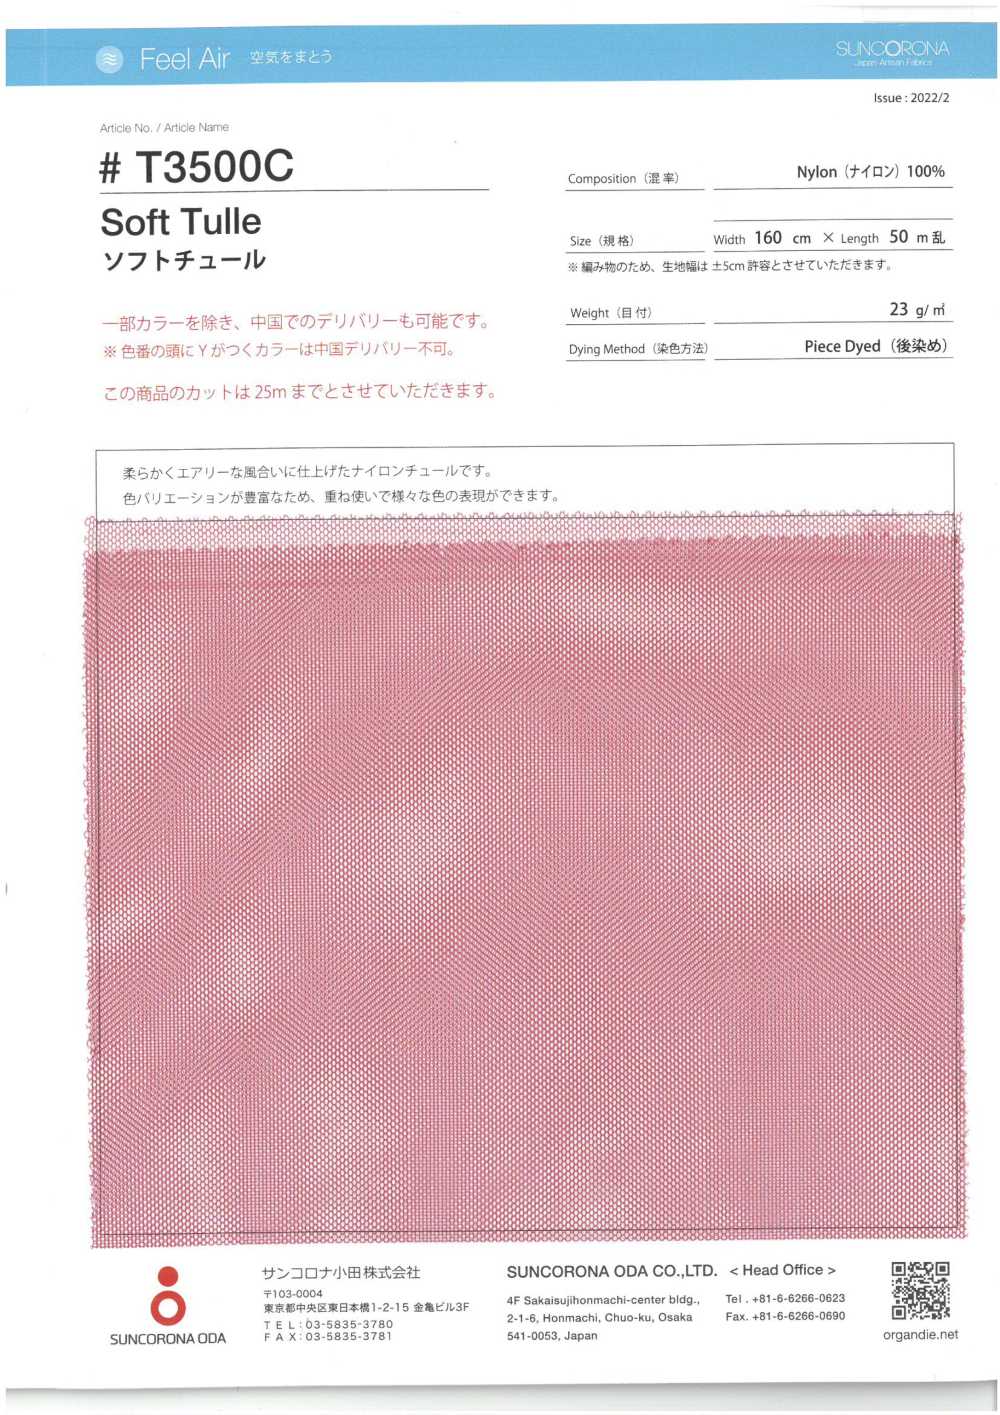 T3500C Soft Tulle[Textile / Fabric] Suncorona Oda